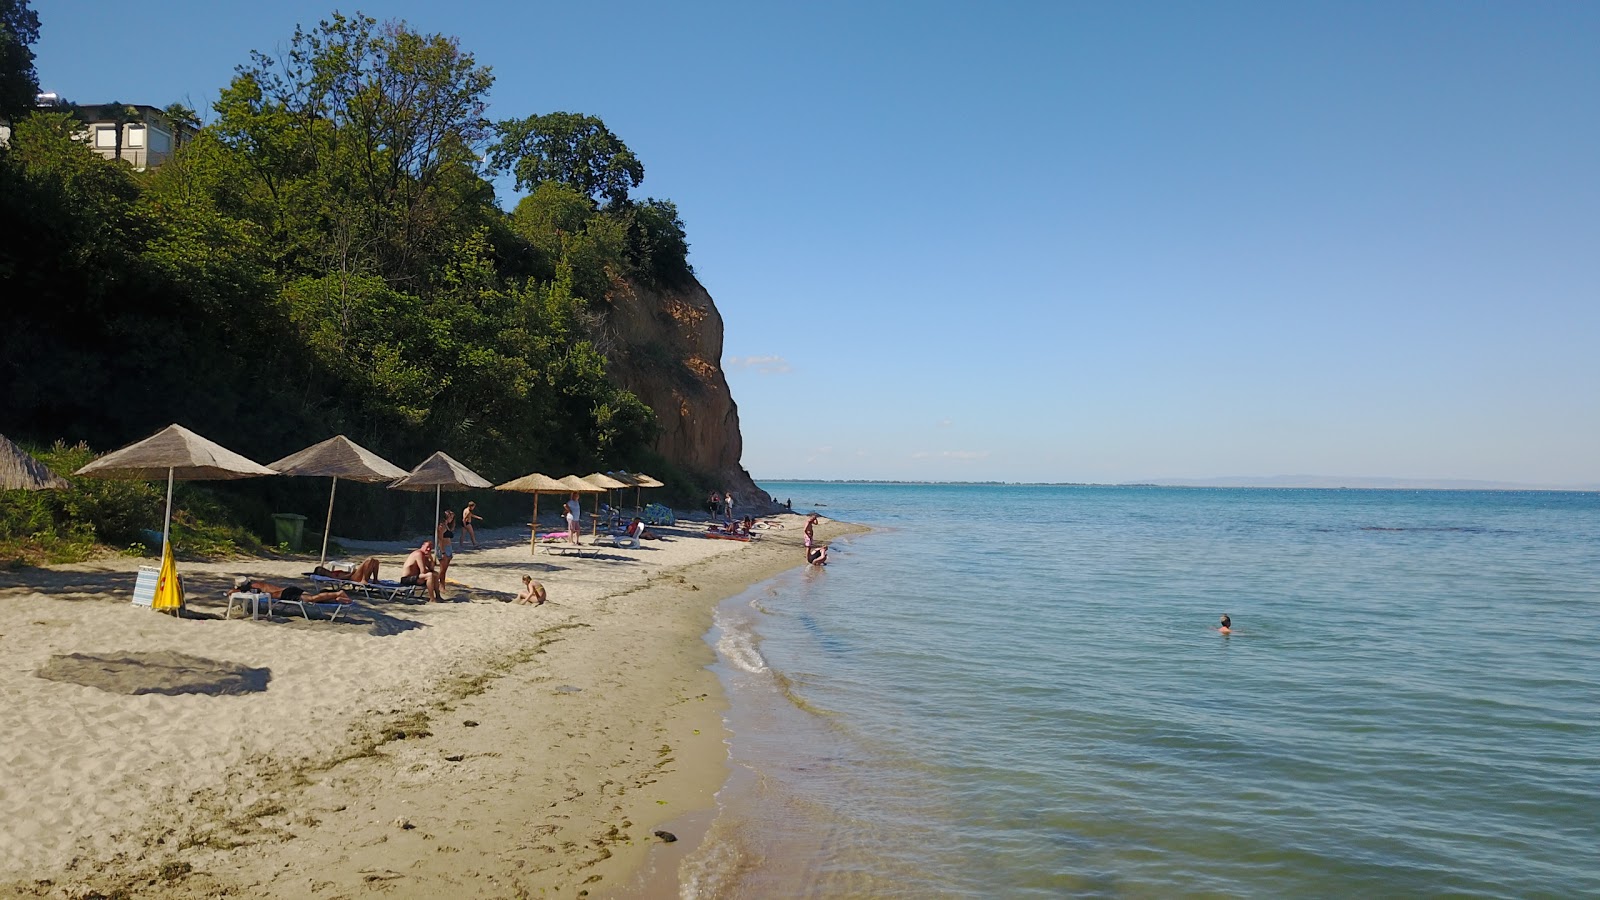 Foto di Agiannis beach con una superficie del sabbia grigia